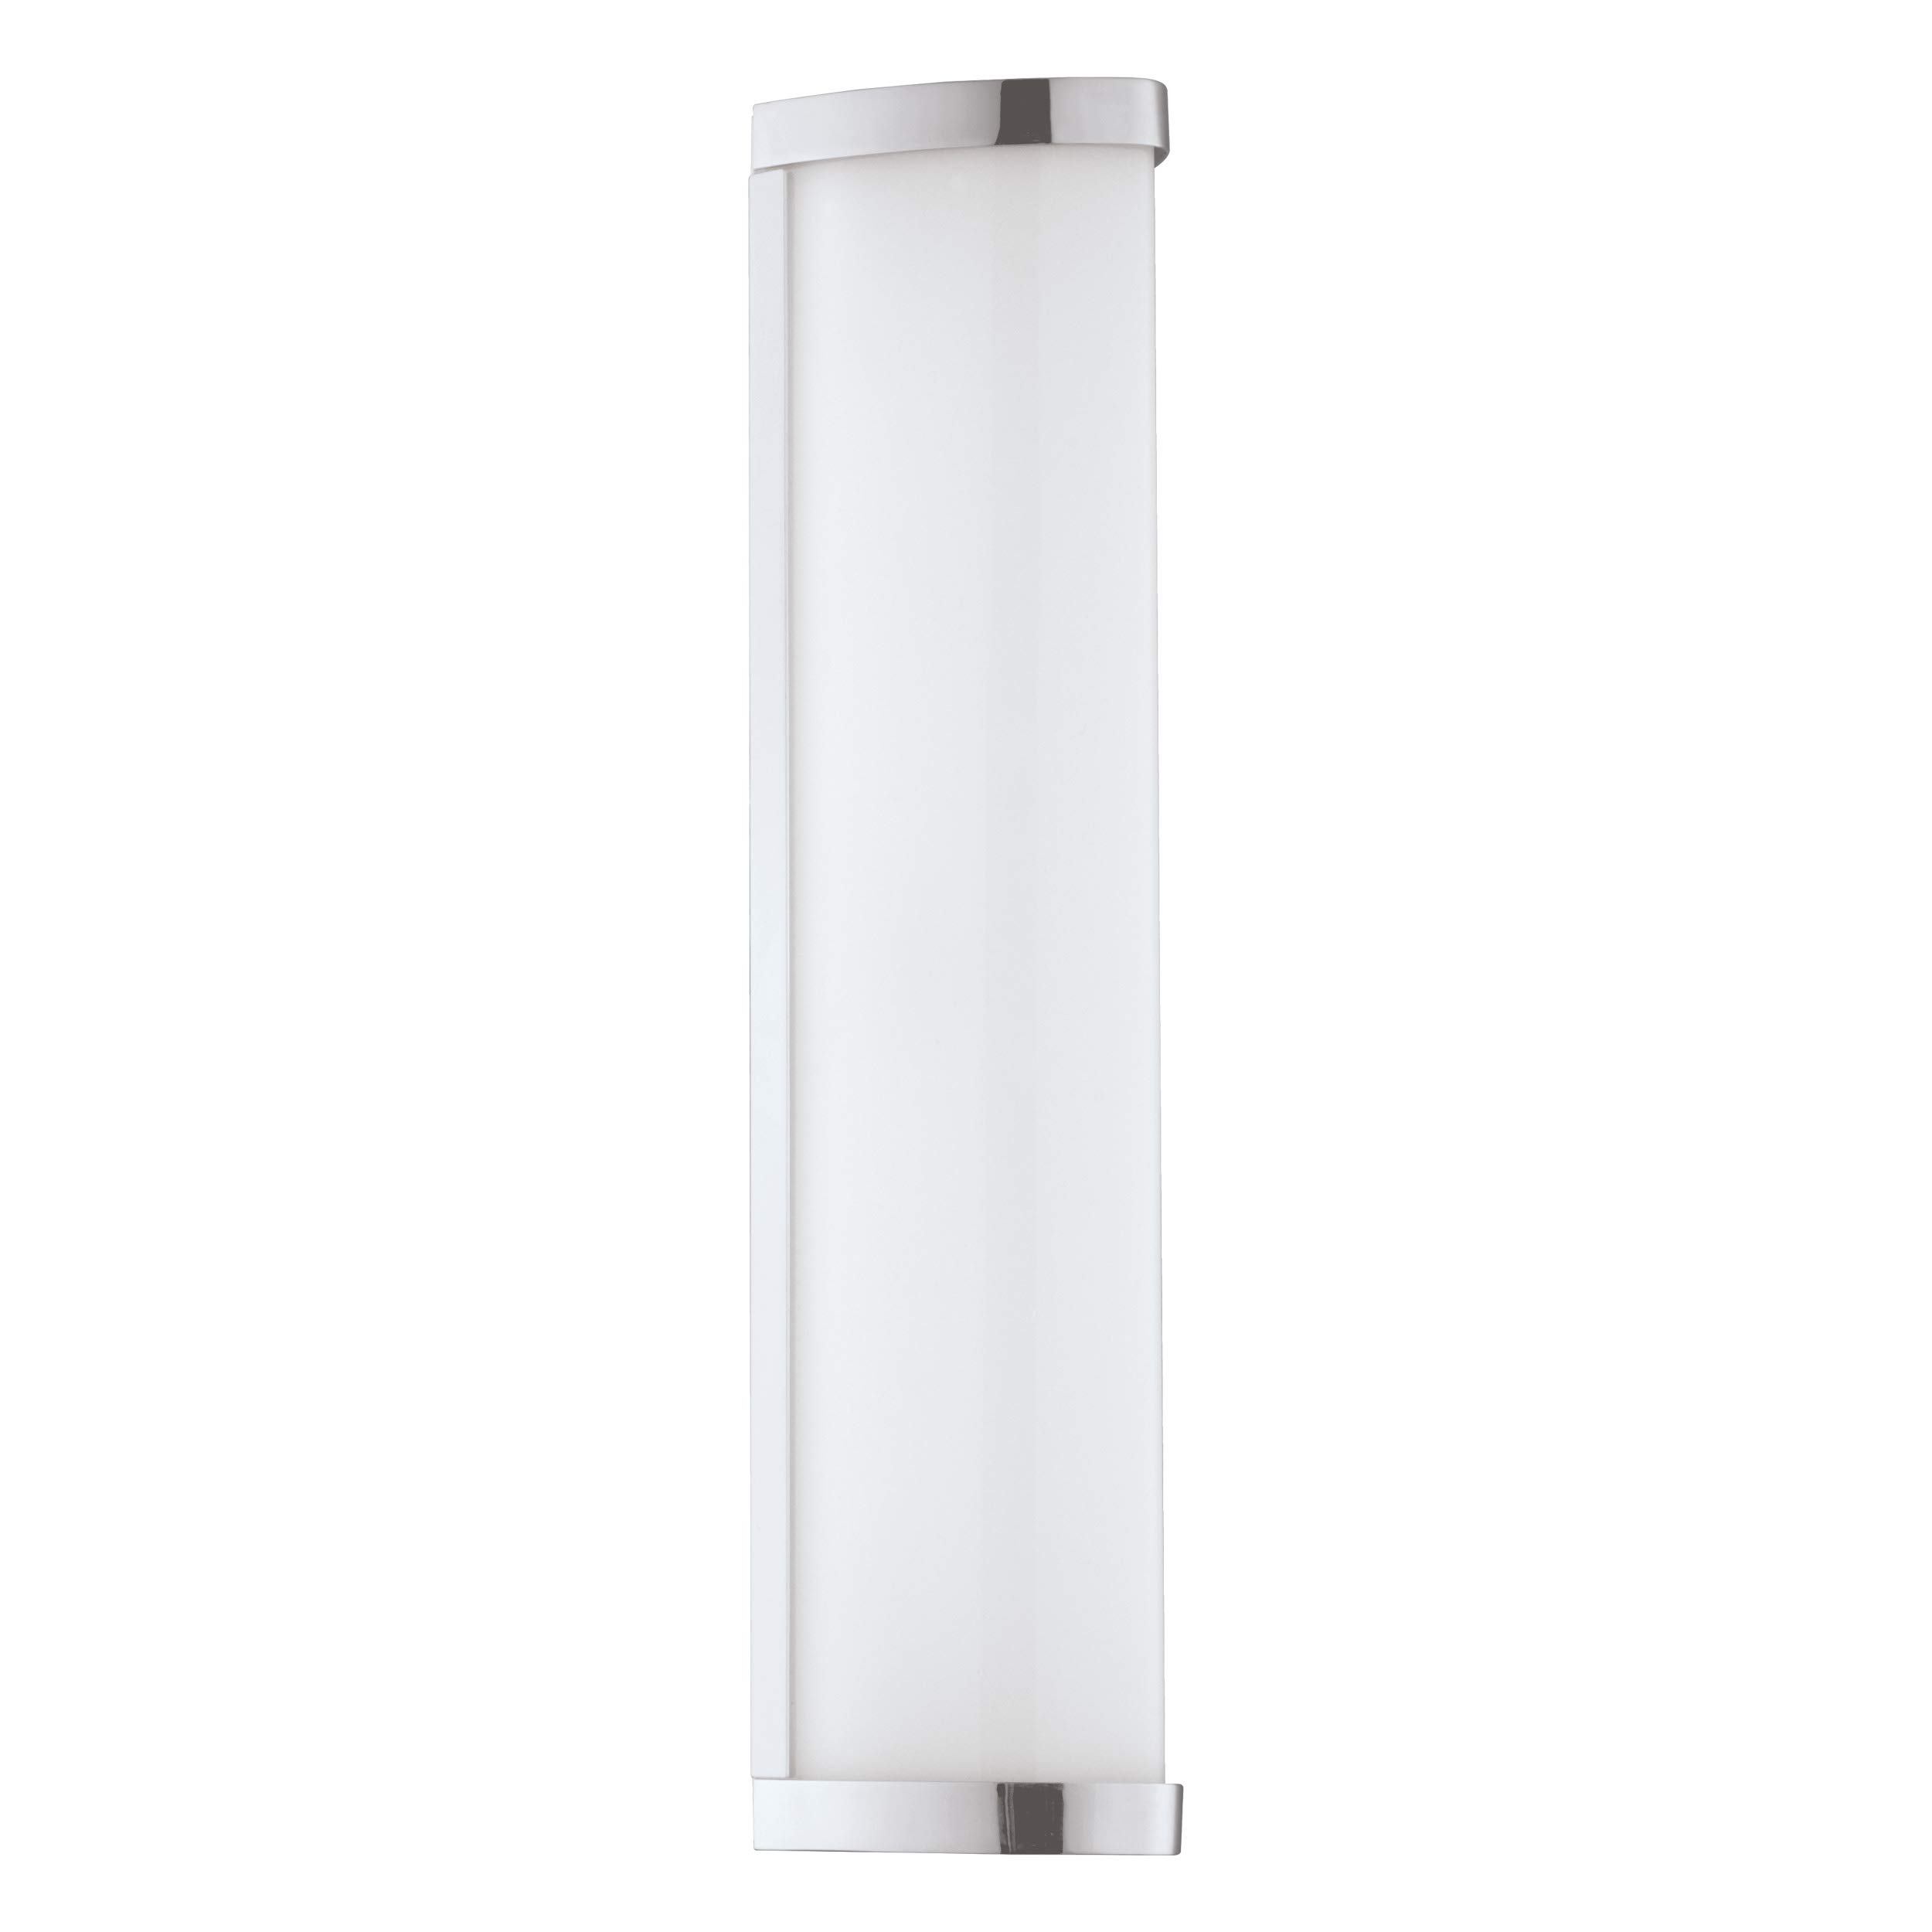 EGLO LED Wandlampe Gita 2, Spiegelleuchte aus aus Metall-Guss in Chrom und Kunststoff in Weiß, Badezimmer Lampe, LED Feuchtraumleuchte neutralweiß, IP44, L 35 cm